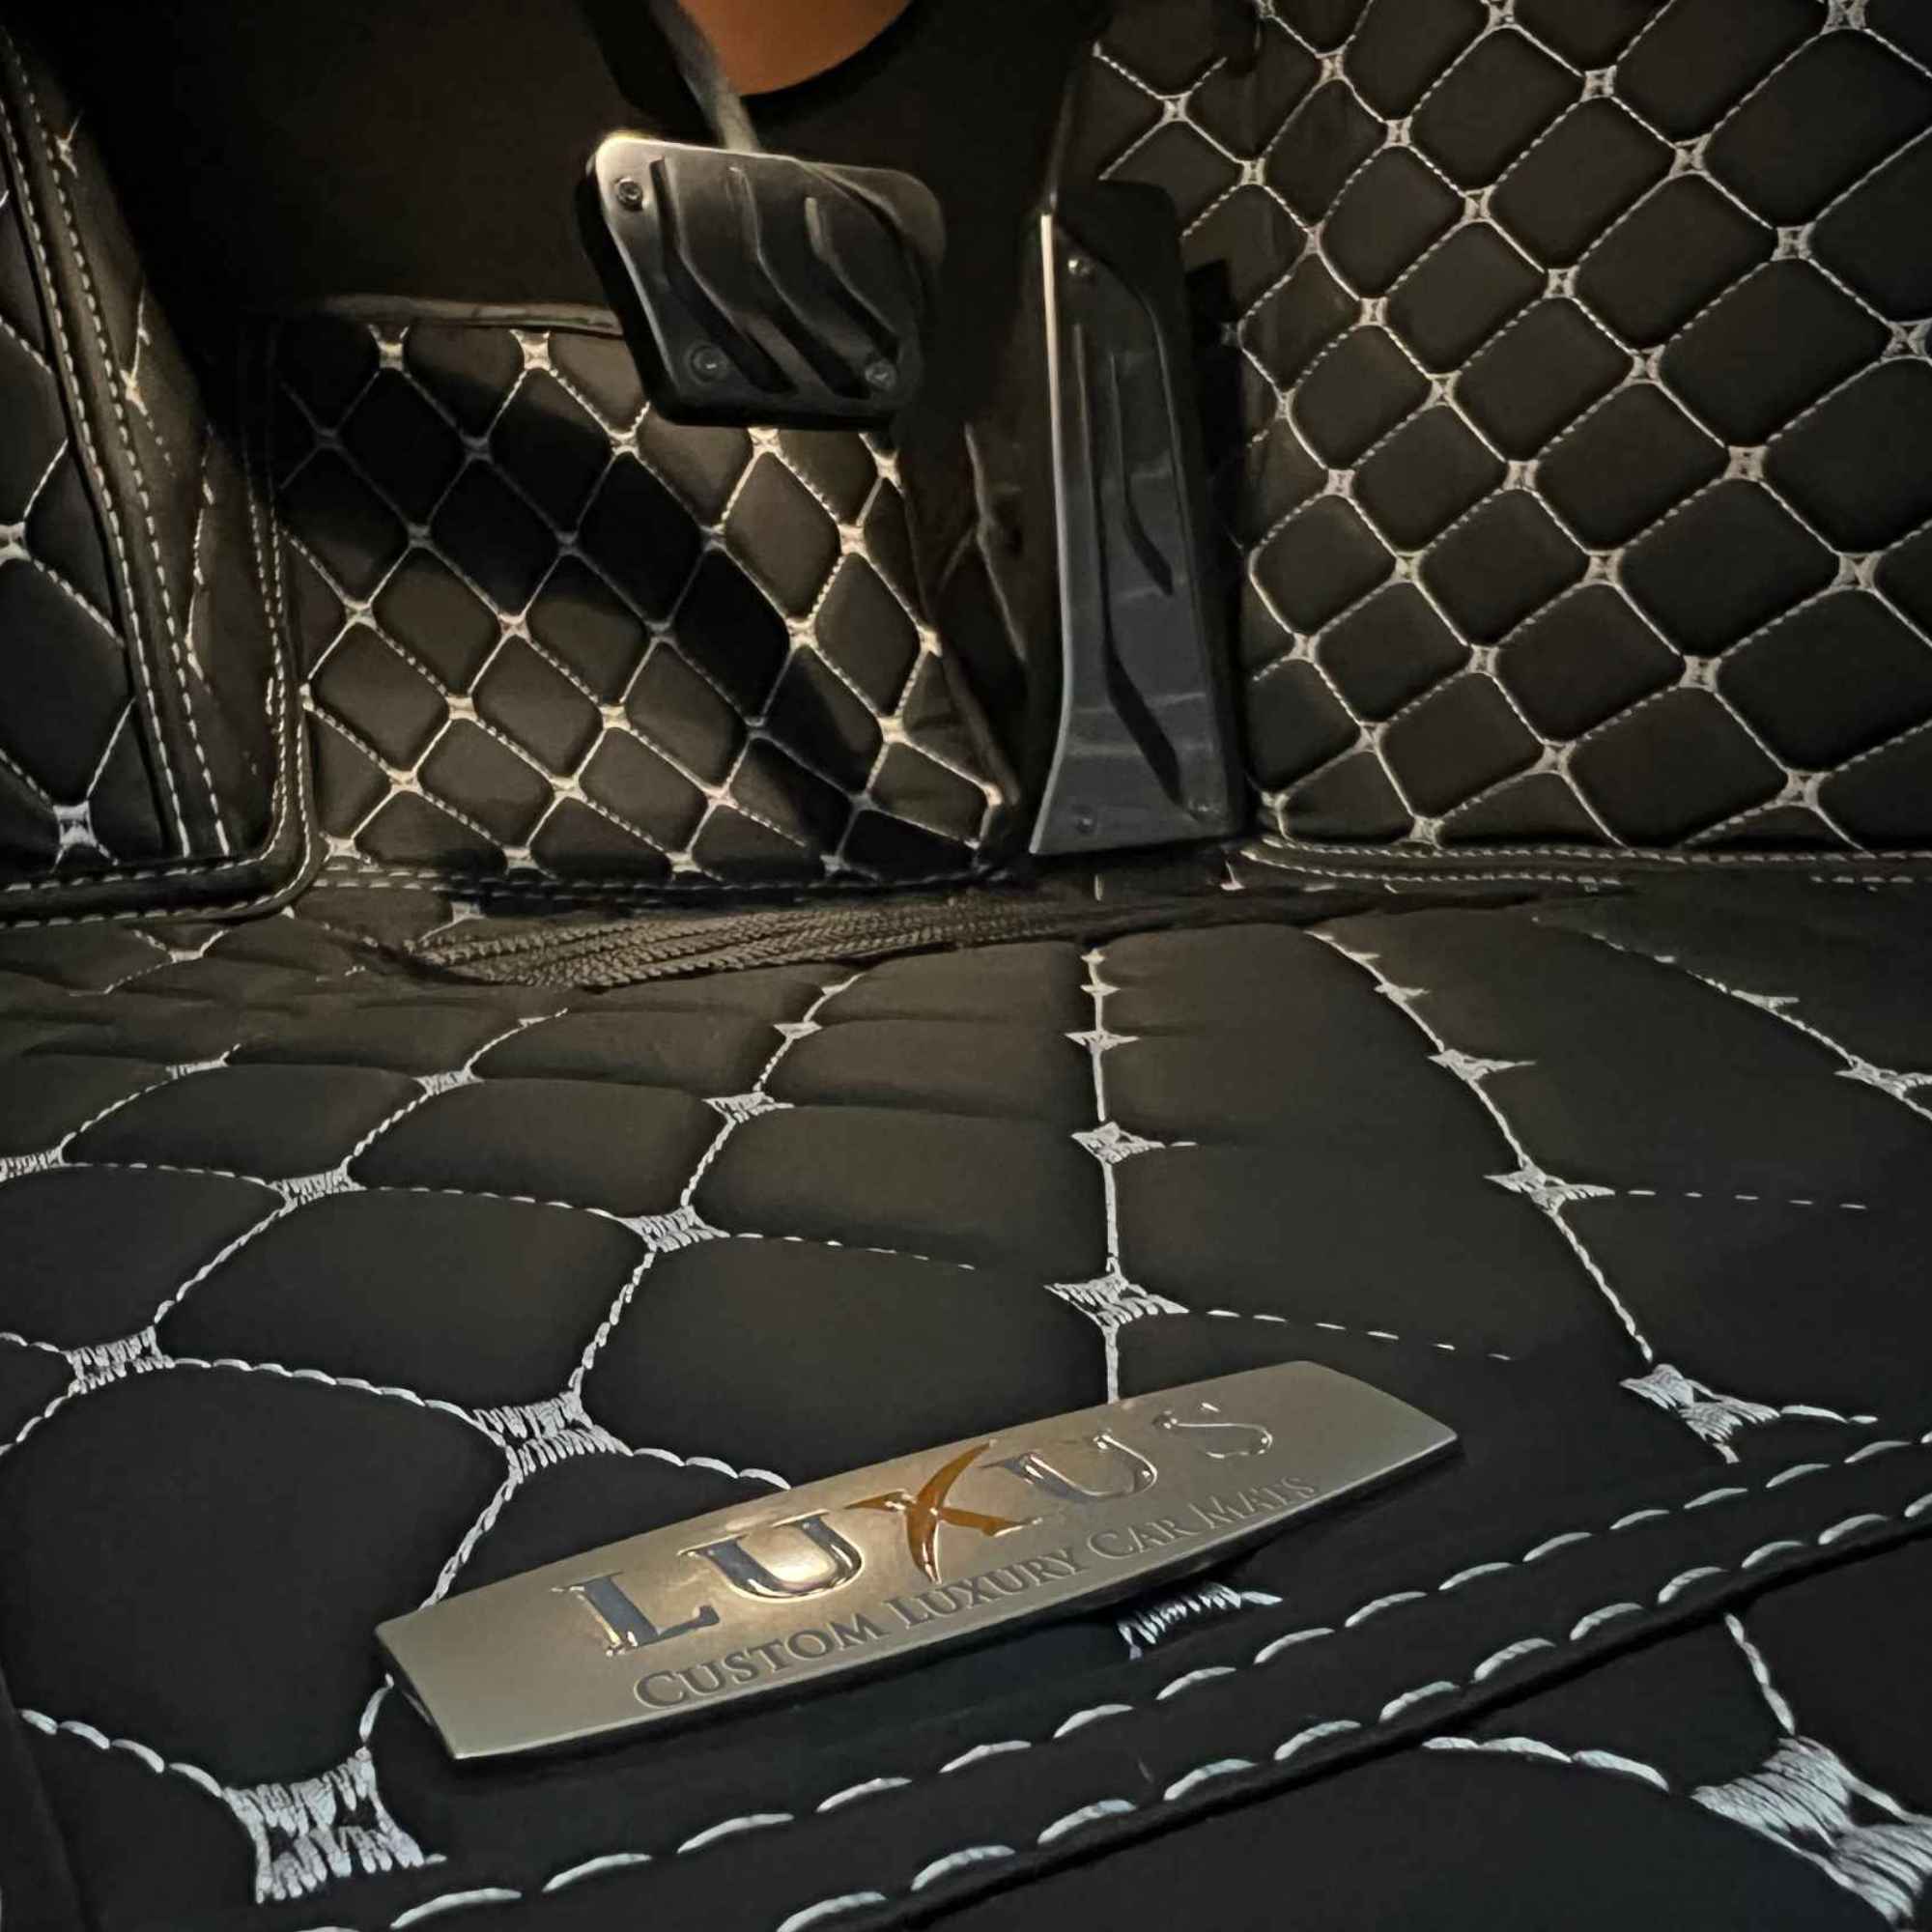 Luxus Car Mats™ - Juego de alfombrillas de lujo con costuras negras y moradas